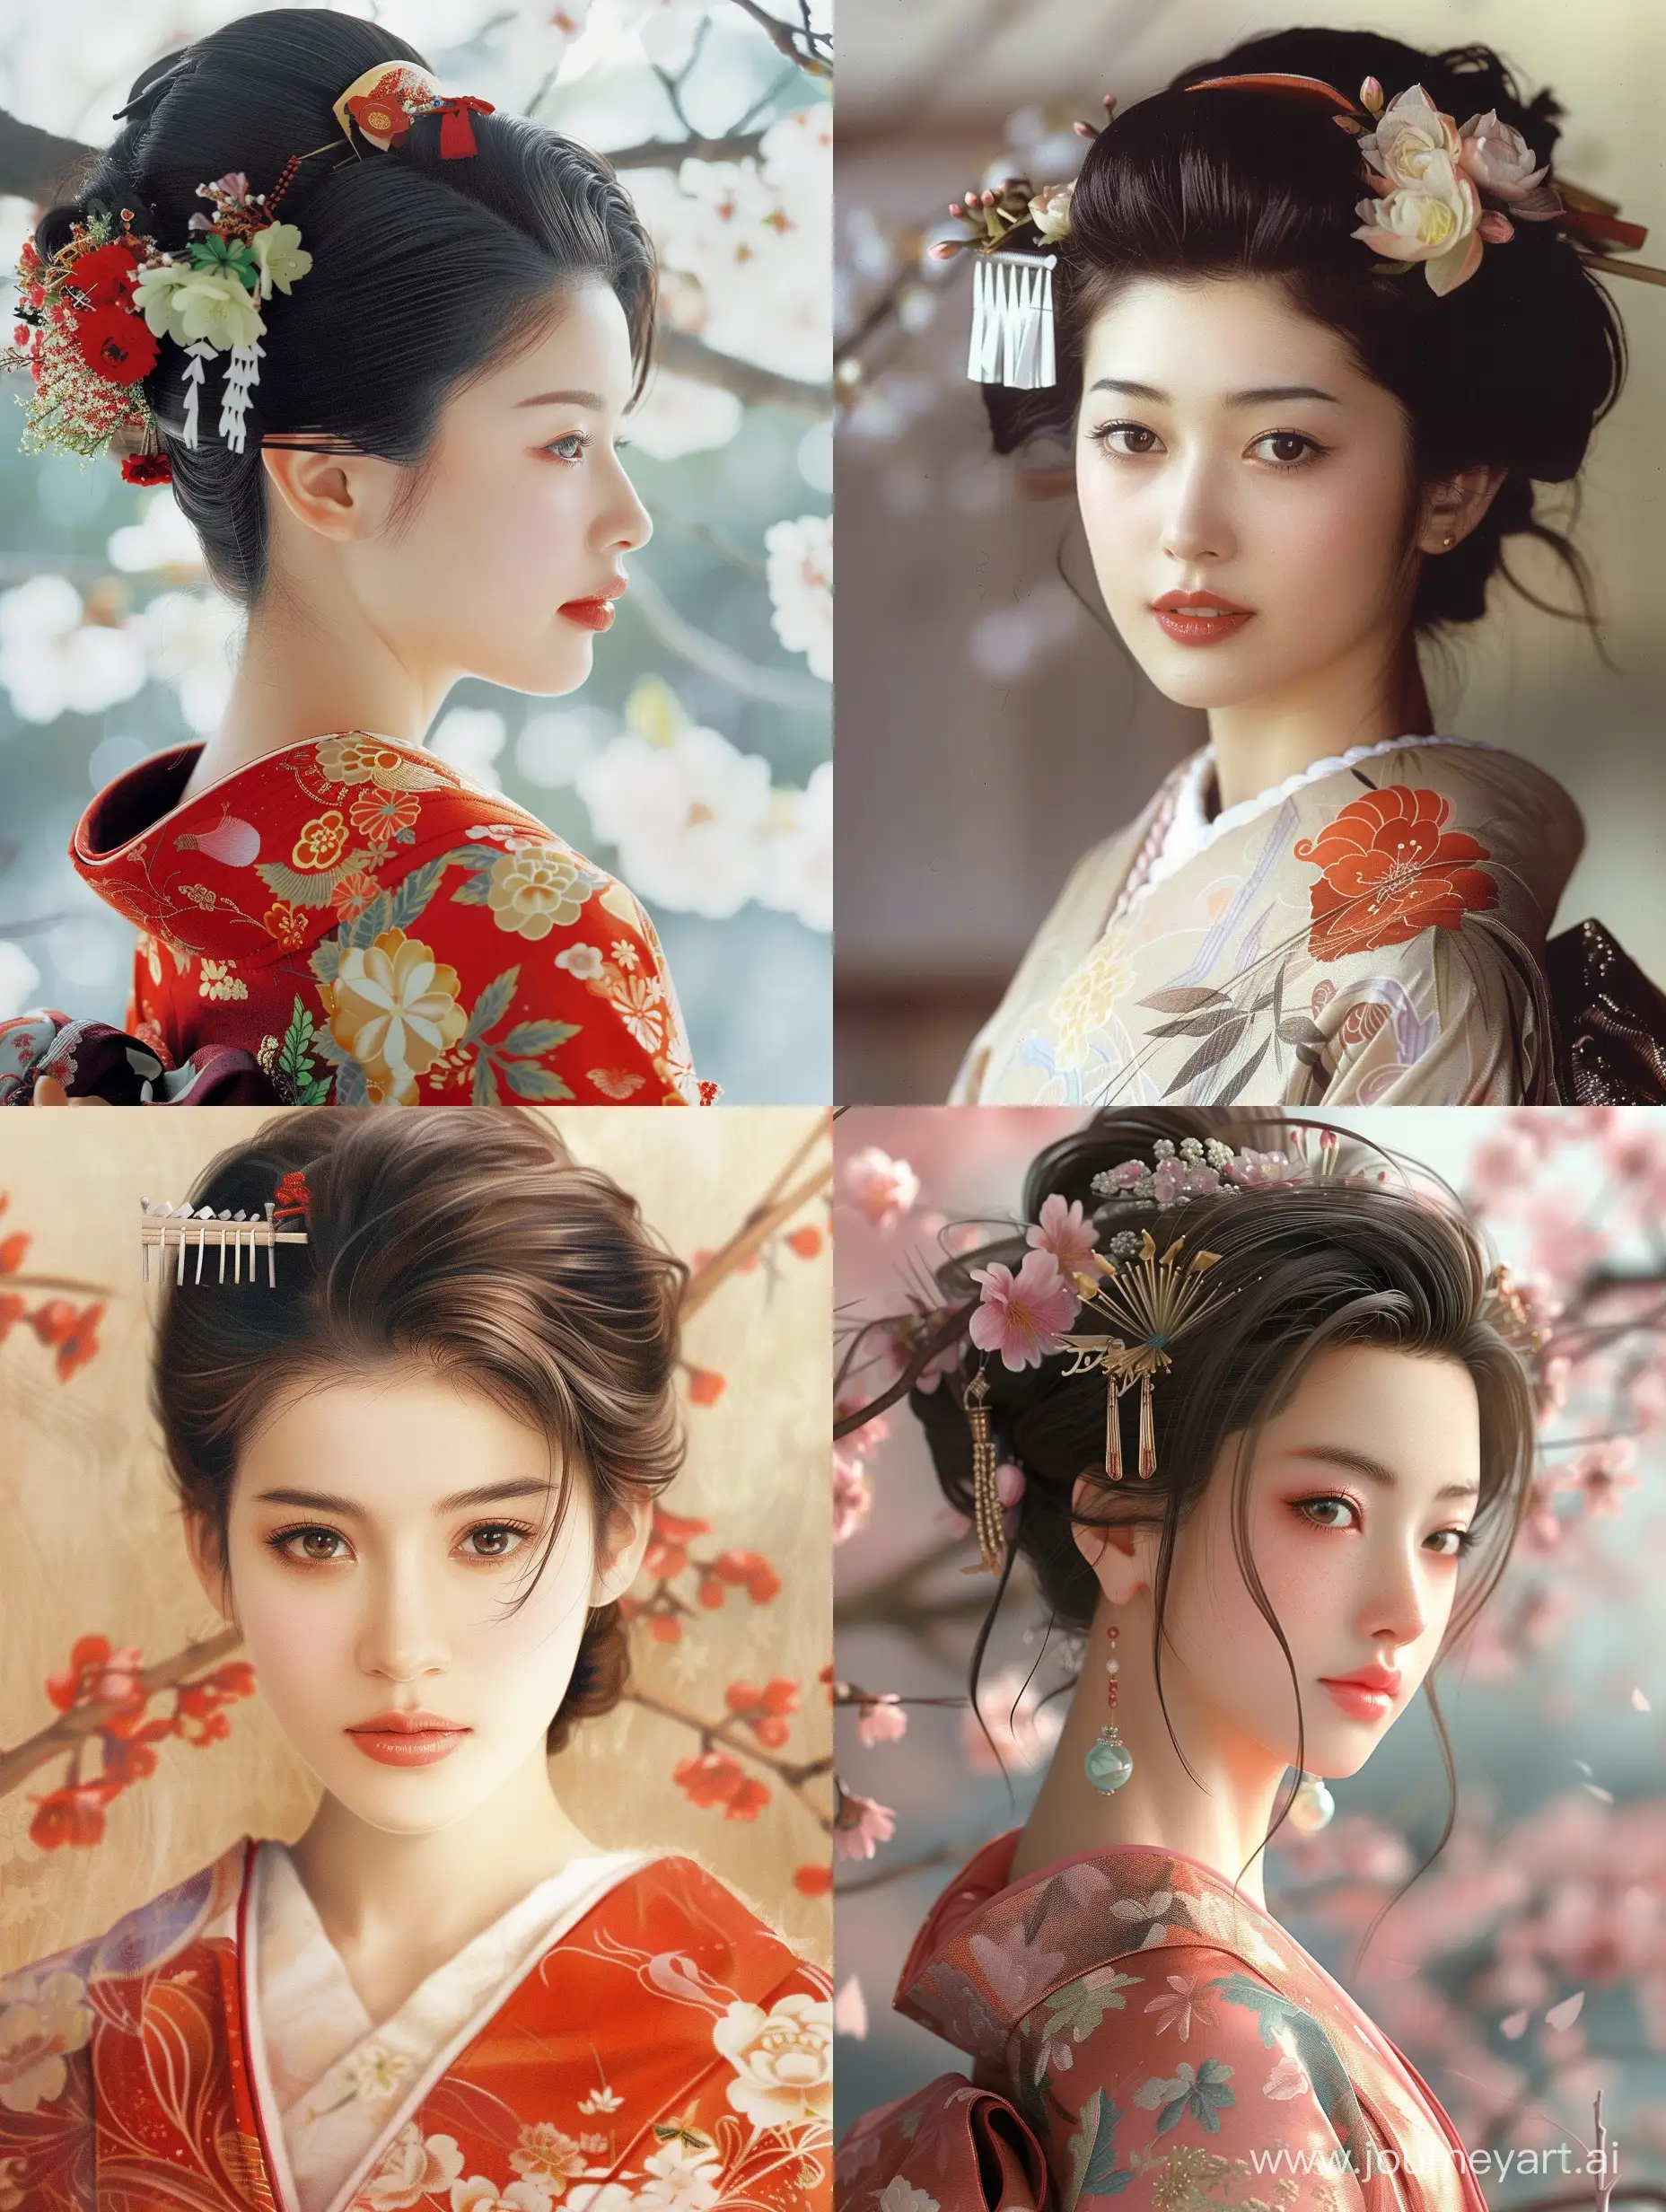 Very beautiful Japanese woman